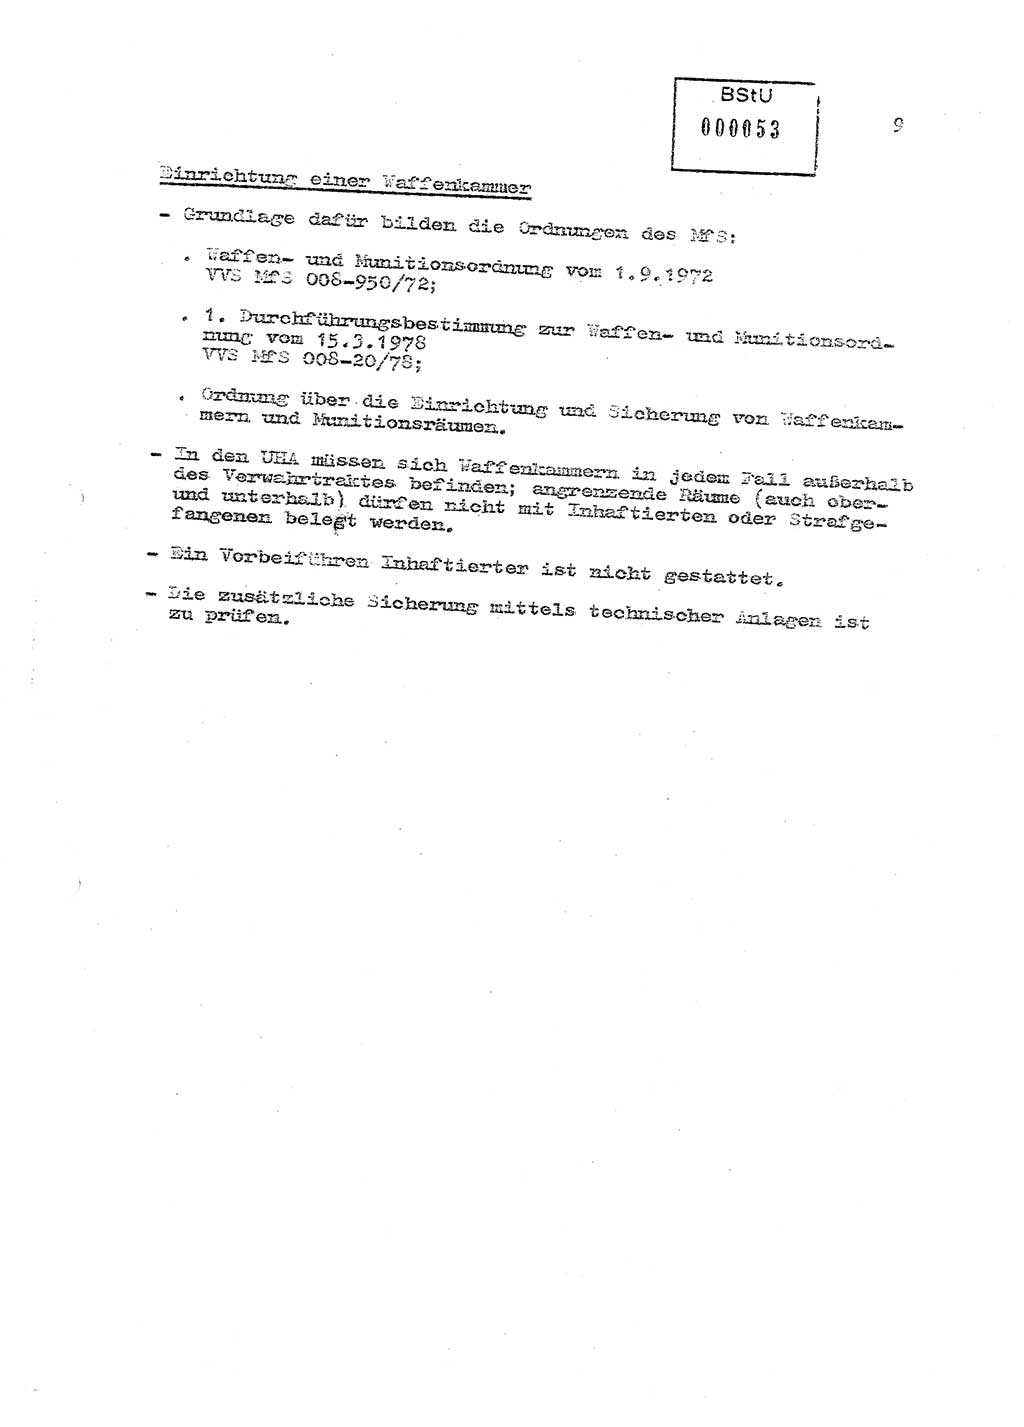 Sicherungs- und Nachrichtentechnik in UHA [Untersuchungshaftanstalten, Ministerium für Staatssicherheit, Deutsche Demokratische Republik (DDR)], Abteilung (Abt.) ⅩⅣ, Berlin 1980, Seite 9 (Si.-NT UHA MfS DDR Abt. ⅩⅣ /80 1980, S. 9)